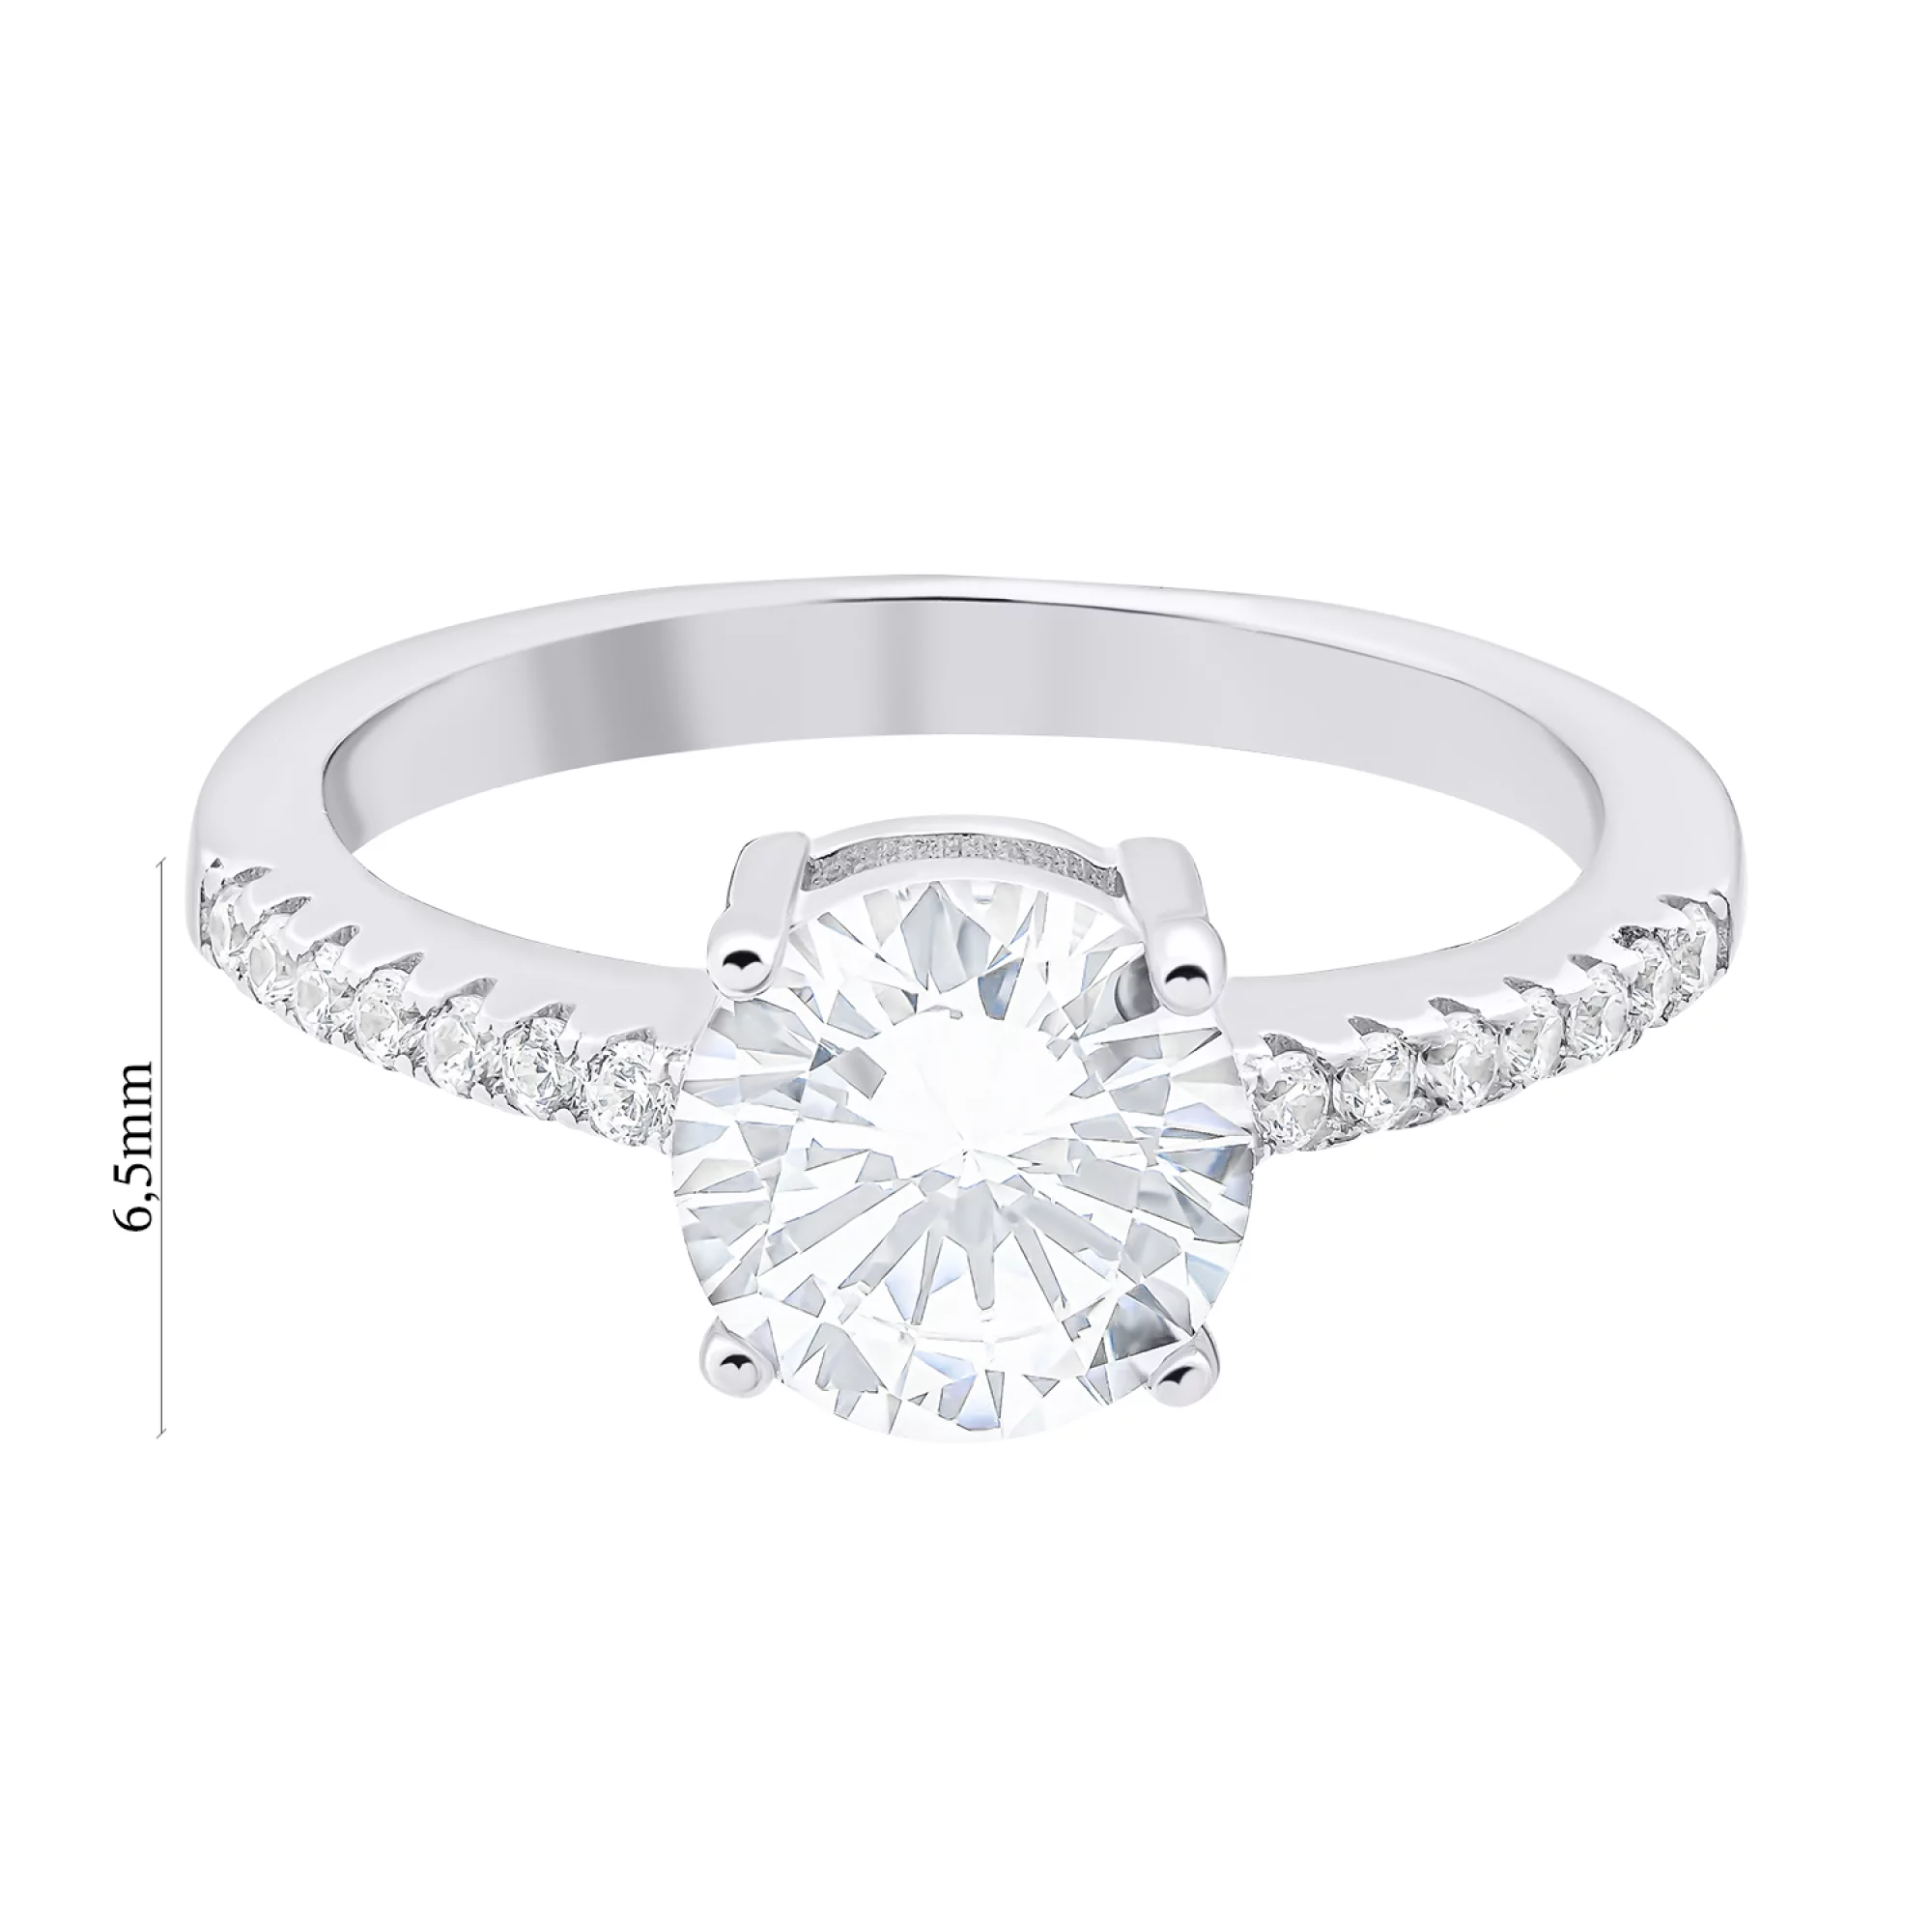 Помолвочное кольцо из серебра с дорожкой фианитов - 1520450 – изображение 3